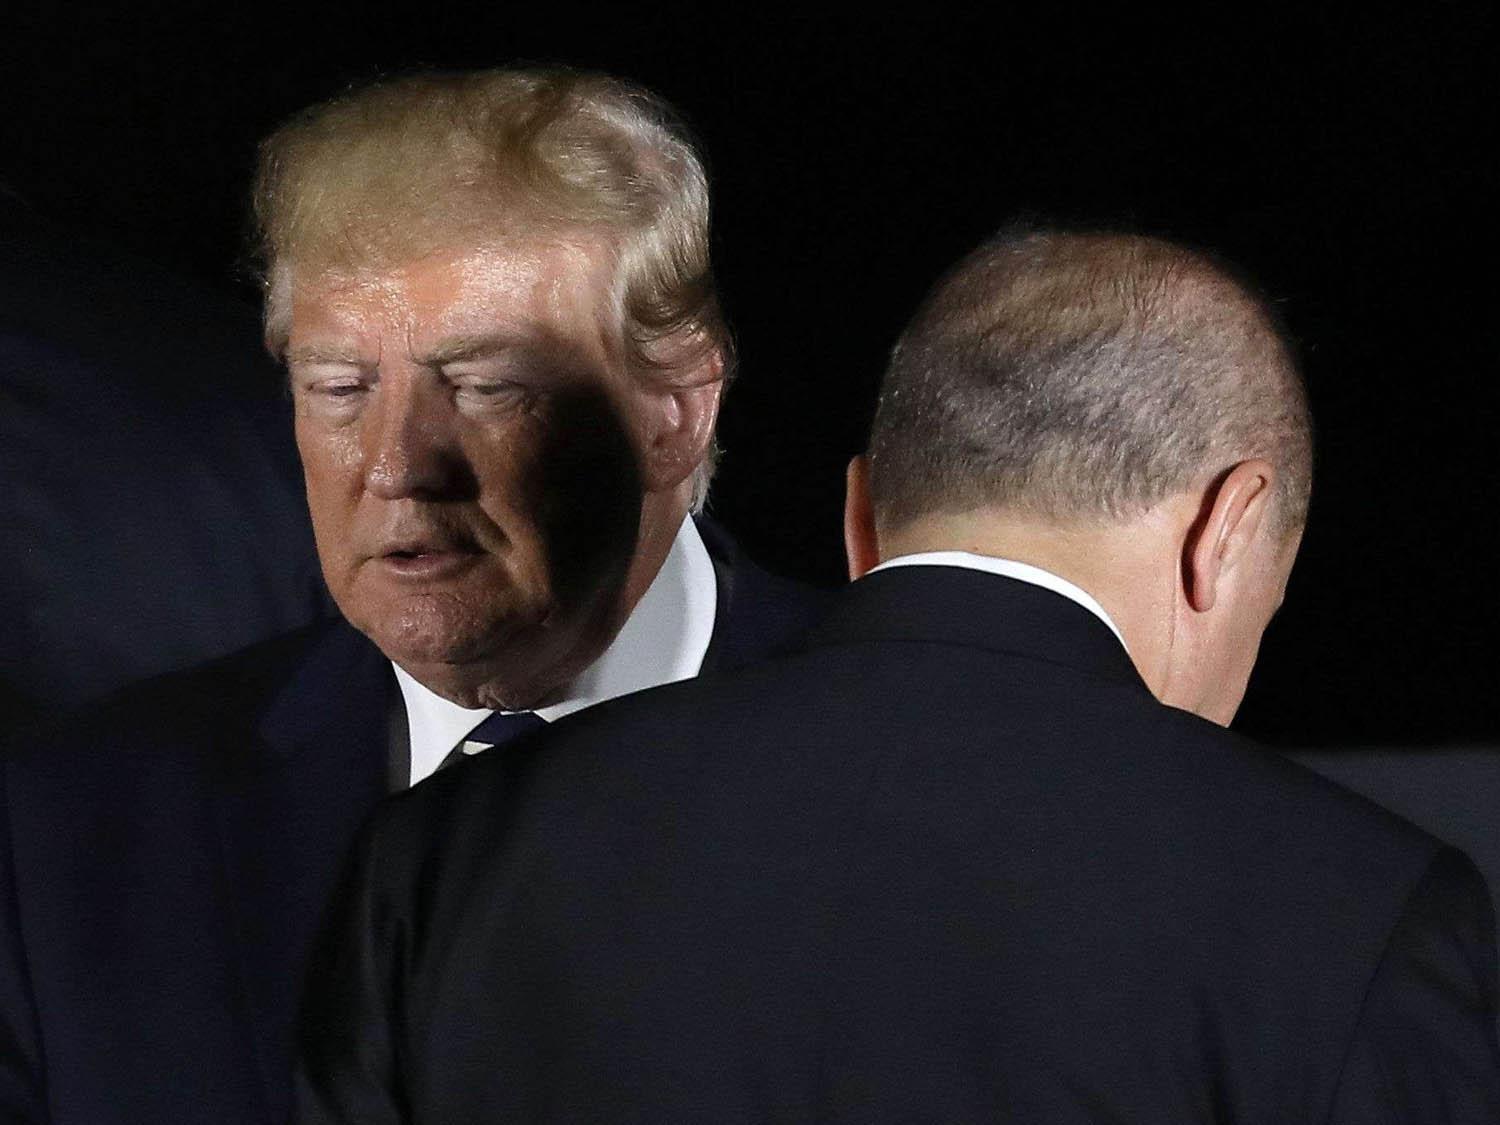 الرئيس الأميركي دونالد ترامب يتحدث مع الرئيس التركي رجب طيب أردوغان